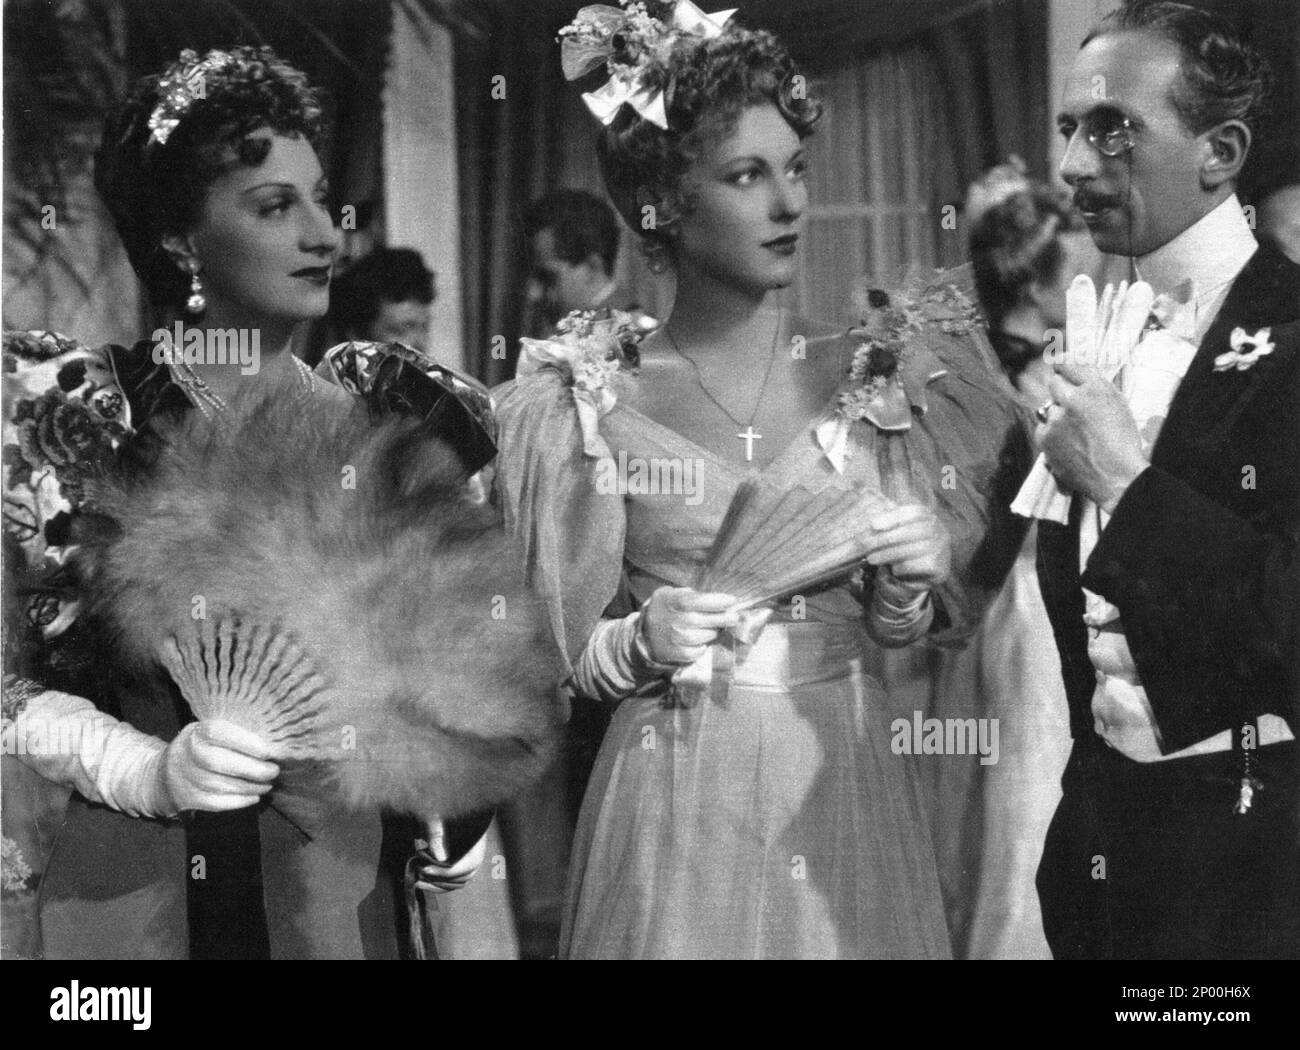 1943 : The italian theatre and movie actress TINA LATTANZI ( Alatri 15 february 1902 - Roma 25 october 1997 ), the voice of Greta Garbo , Joan Crafword and Marlene Dietrich in the italian editions of Hollywood movies . In this photo with VALENTINA CORTESE ( at center ) in LA CARICA DEGLI EROI by Oreste Biancoli and Anton Giulio Majano   - TEATRO - THEATER - portrait - ritratto - CINEMA   - ANNI QUARANTA - 40's - '40 - eardrops - orecchino - orecchini - fan - ventaglio - feathers - piume - chignon  - jewels - jewellery - gioielli - gioiello - DOPPIAGGIO - DOPPIATORE - DOPPIATRICE  ----  Archivi Stock Photo